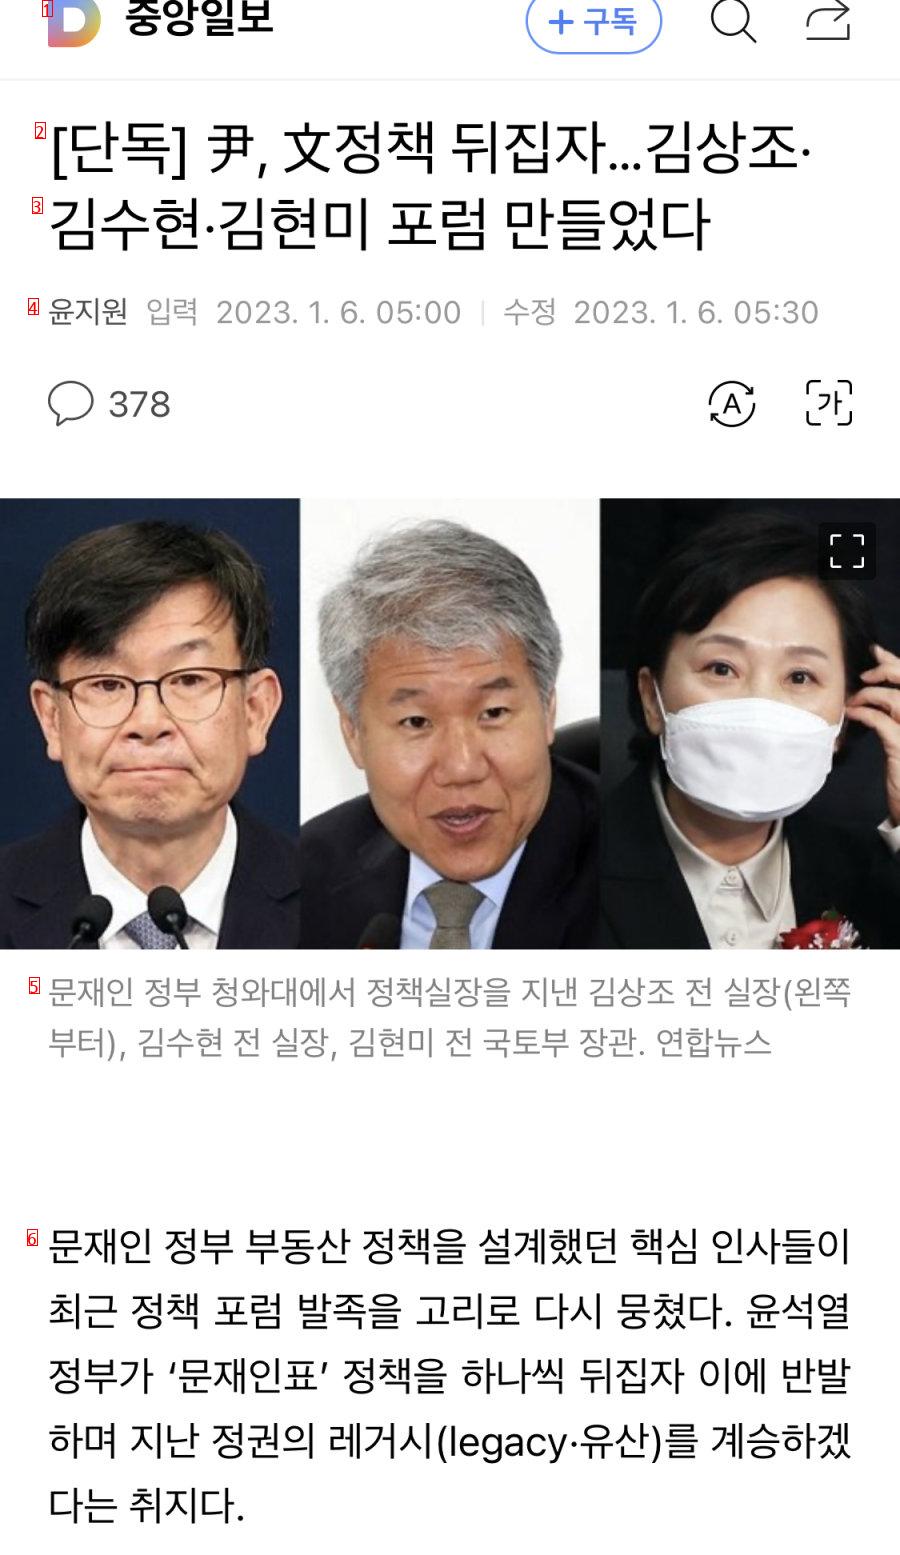 ●単独尹長官の文政策を覆そう…キム·サンジョ、キム·スヒョン、キム·ヒョンミフォーラムを作った。